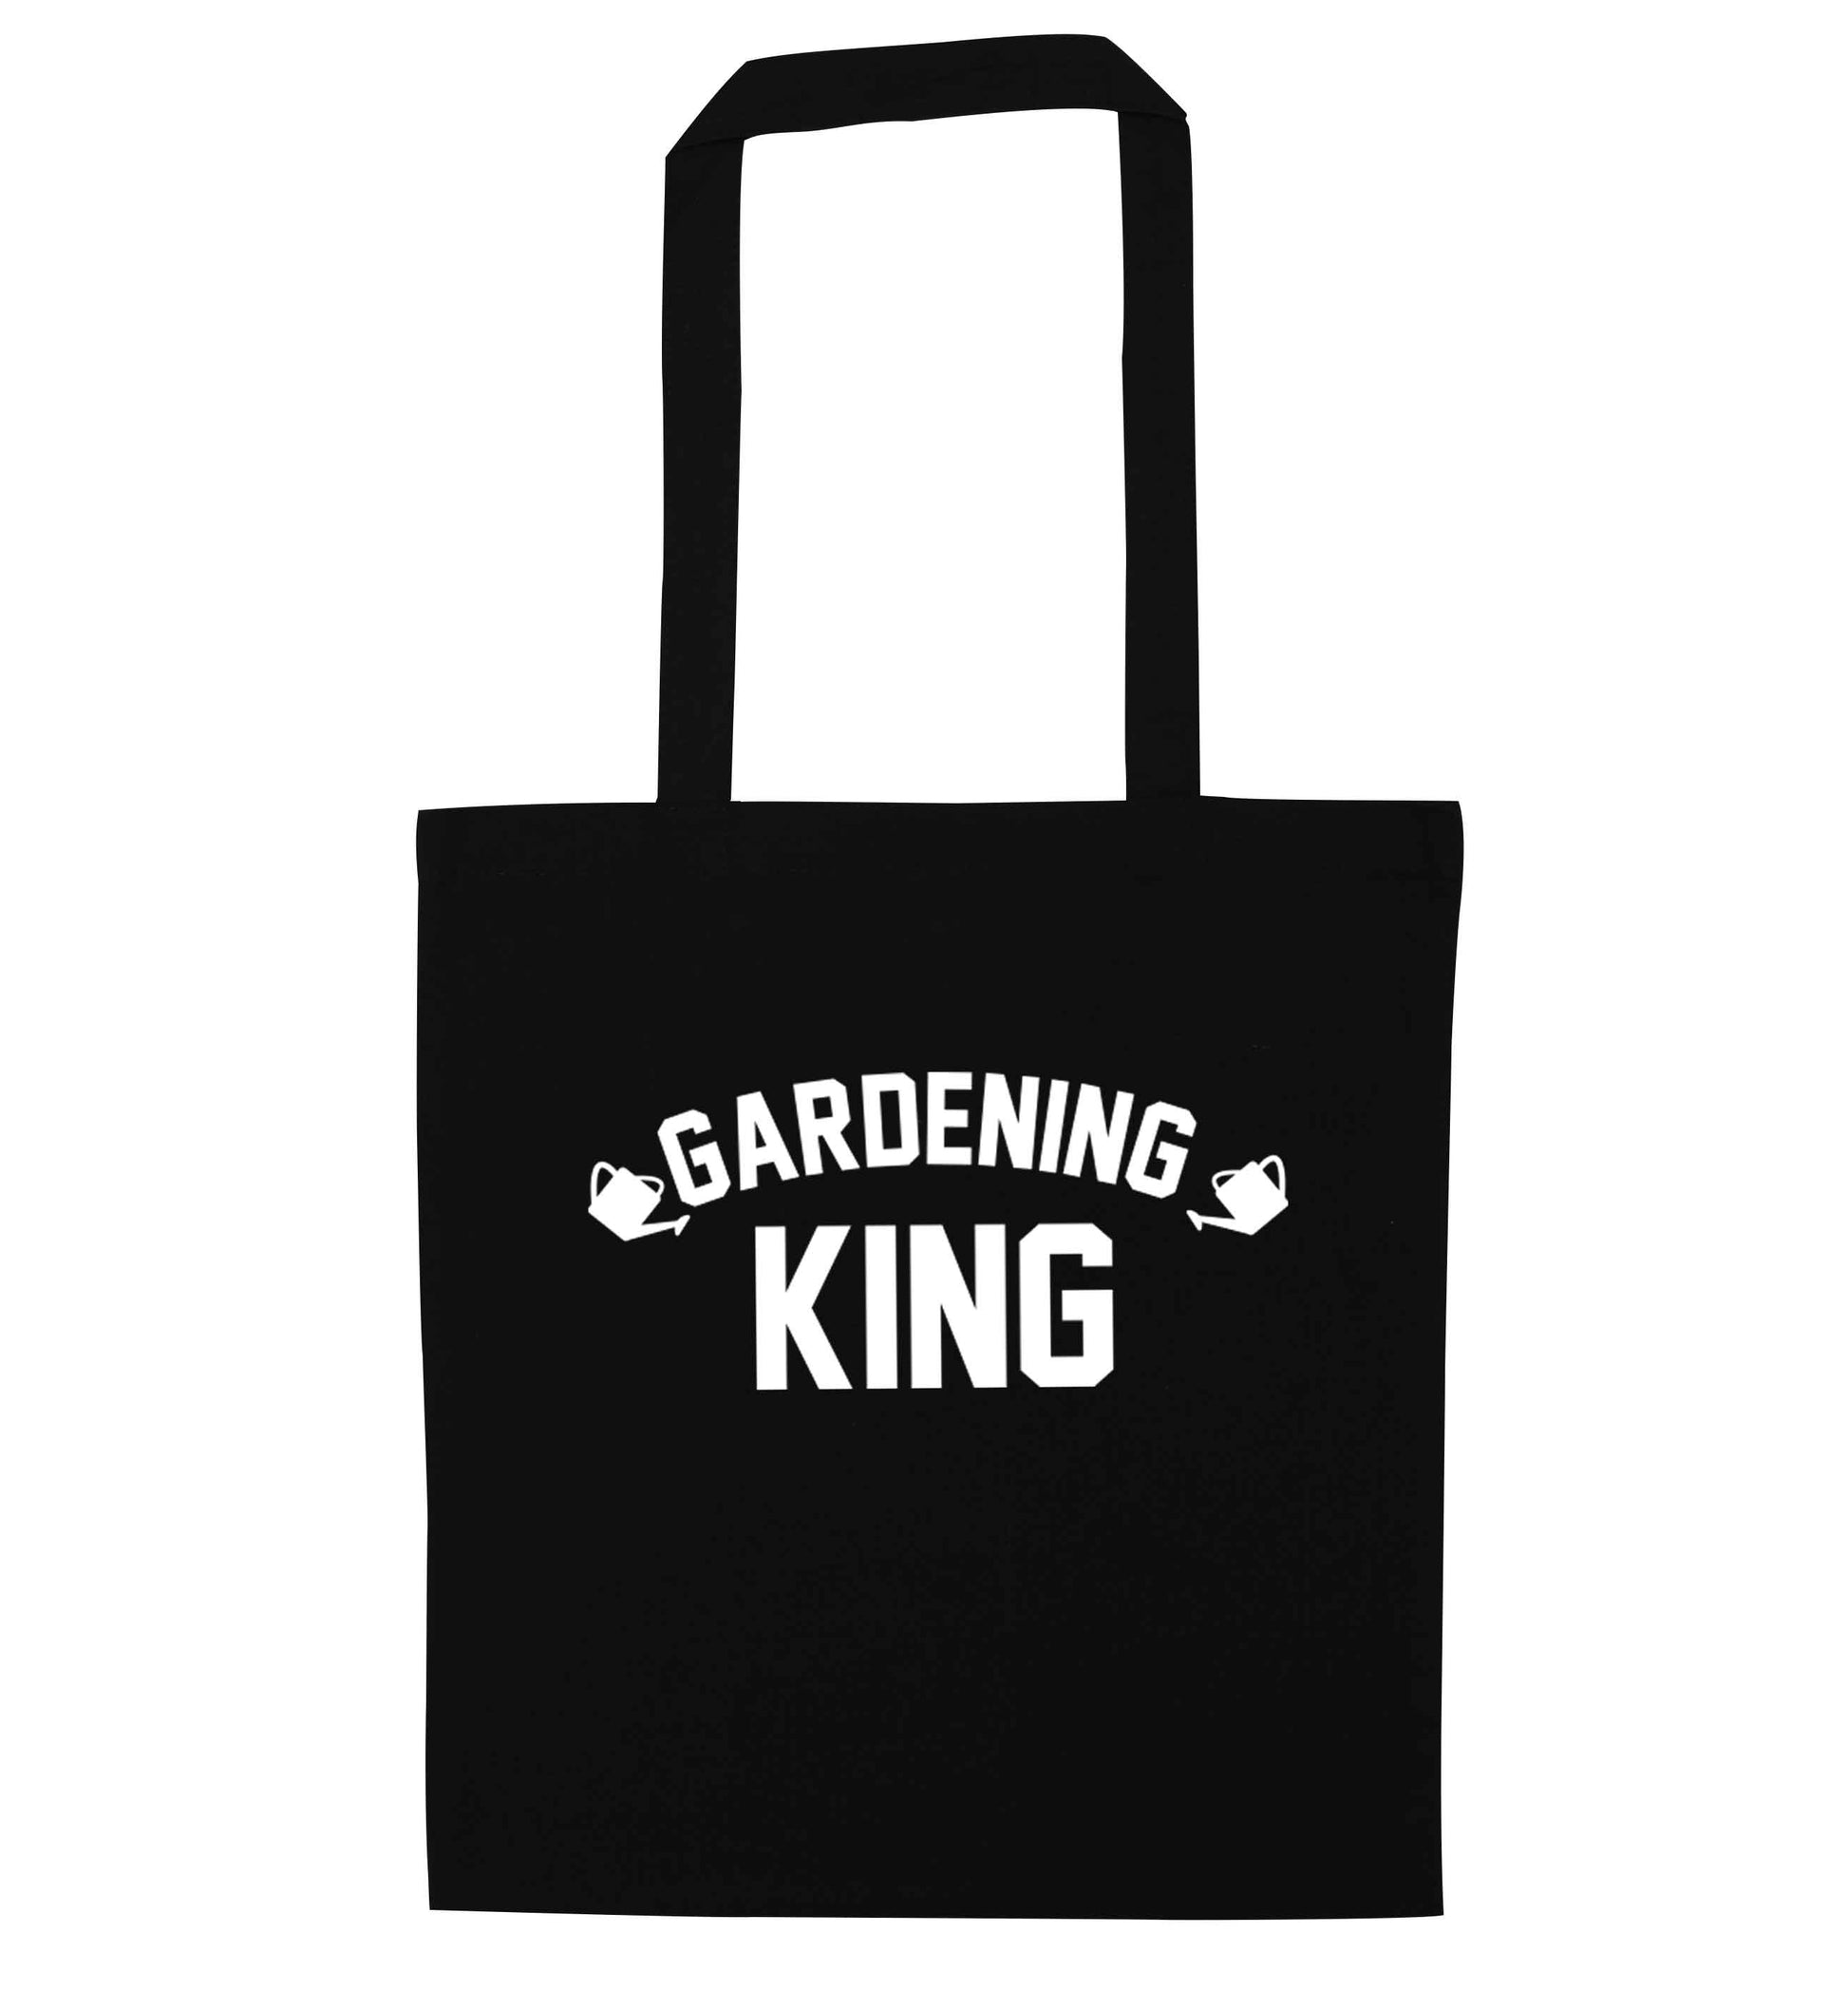 Gardening king black tote bag